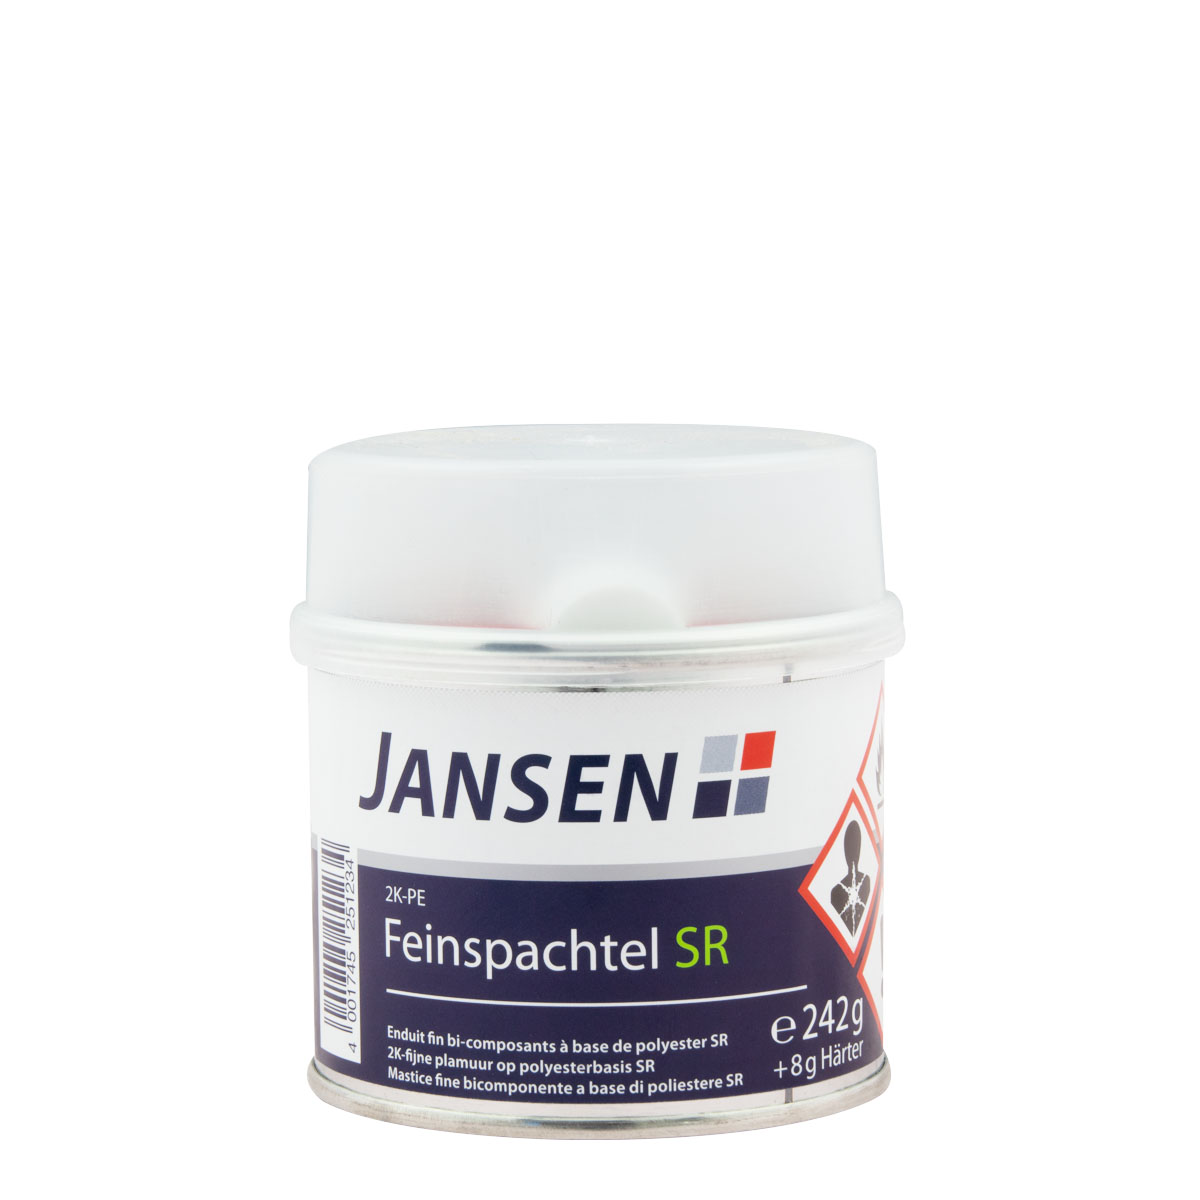 Jansen 2K-PE Feinspachtel SR 250g weiss